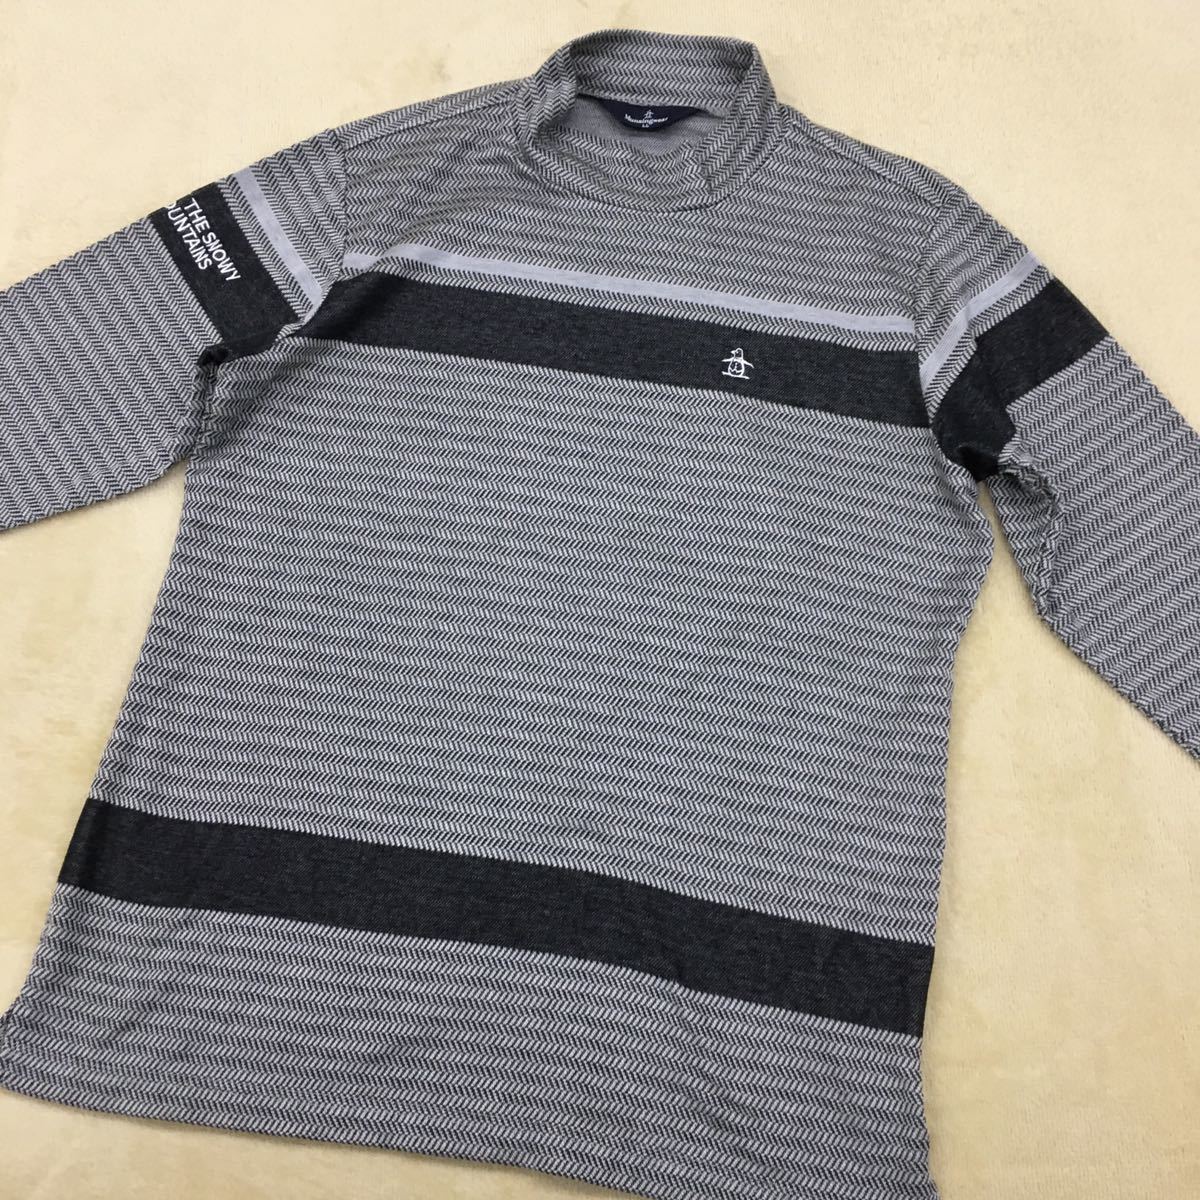  Munsingwear wear Golf wear sport high‐necked knitted shirt acrylic fiber rayon cotton Blend embroidery Logo penguin men's LL